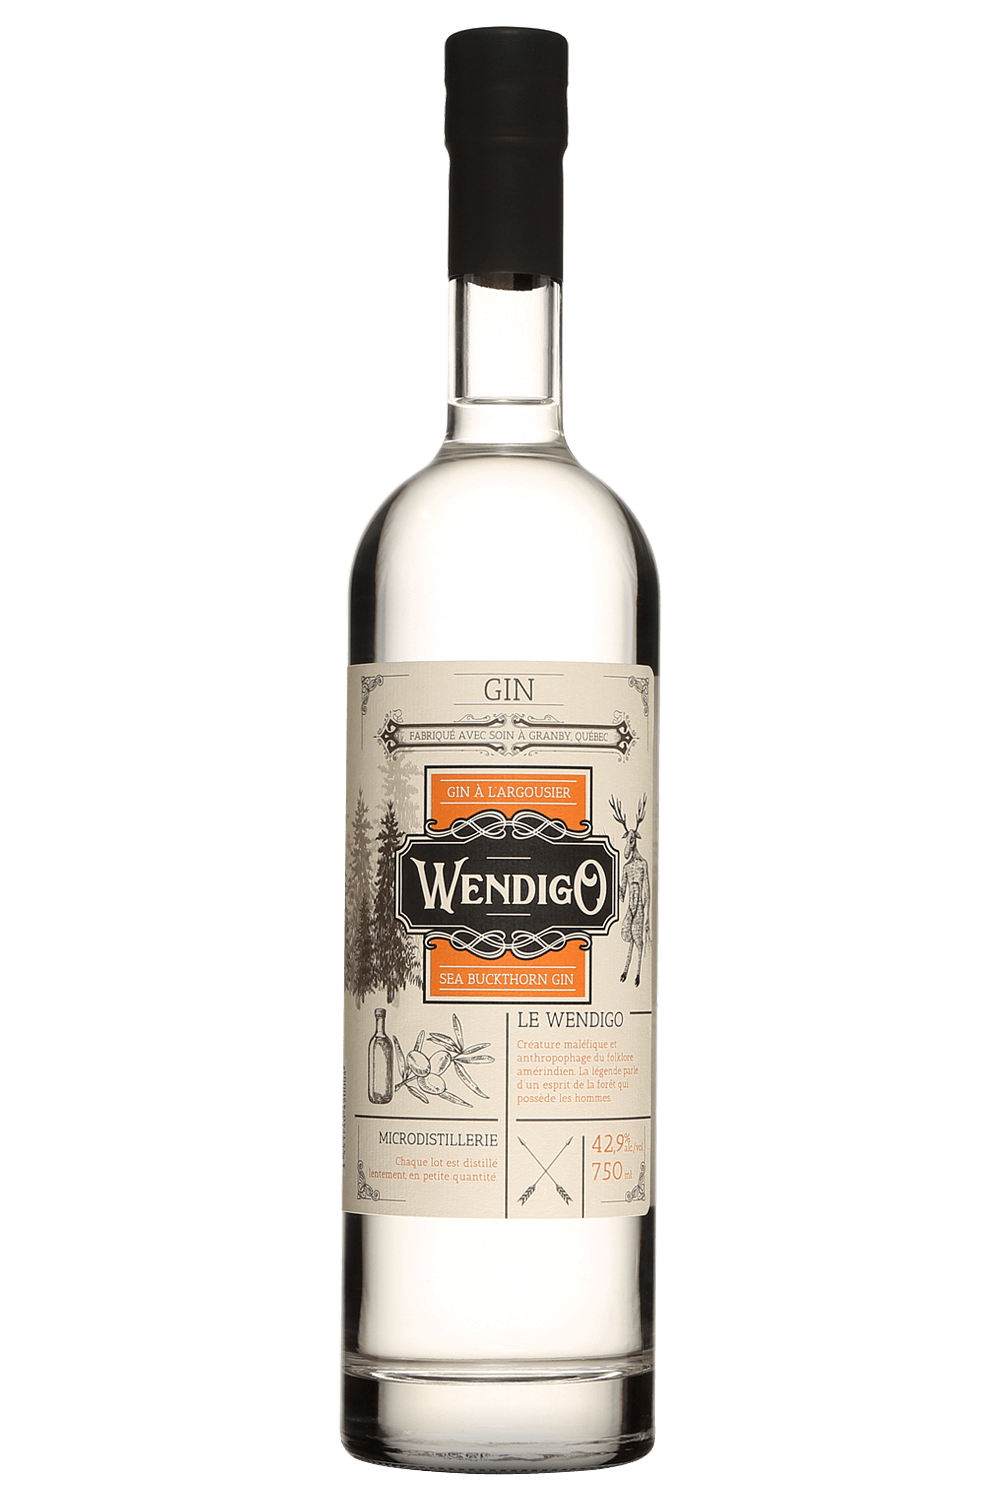 Bouteille de gin Wendigo